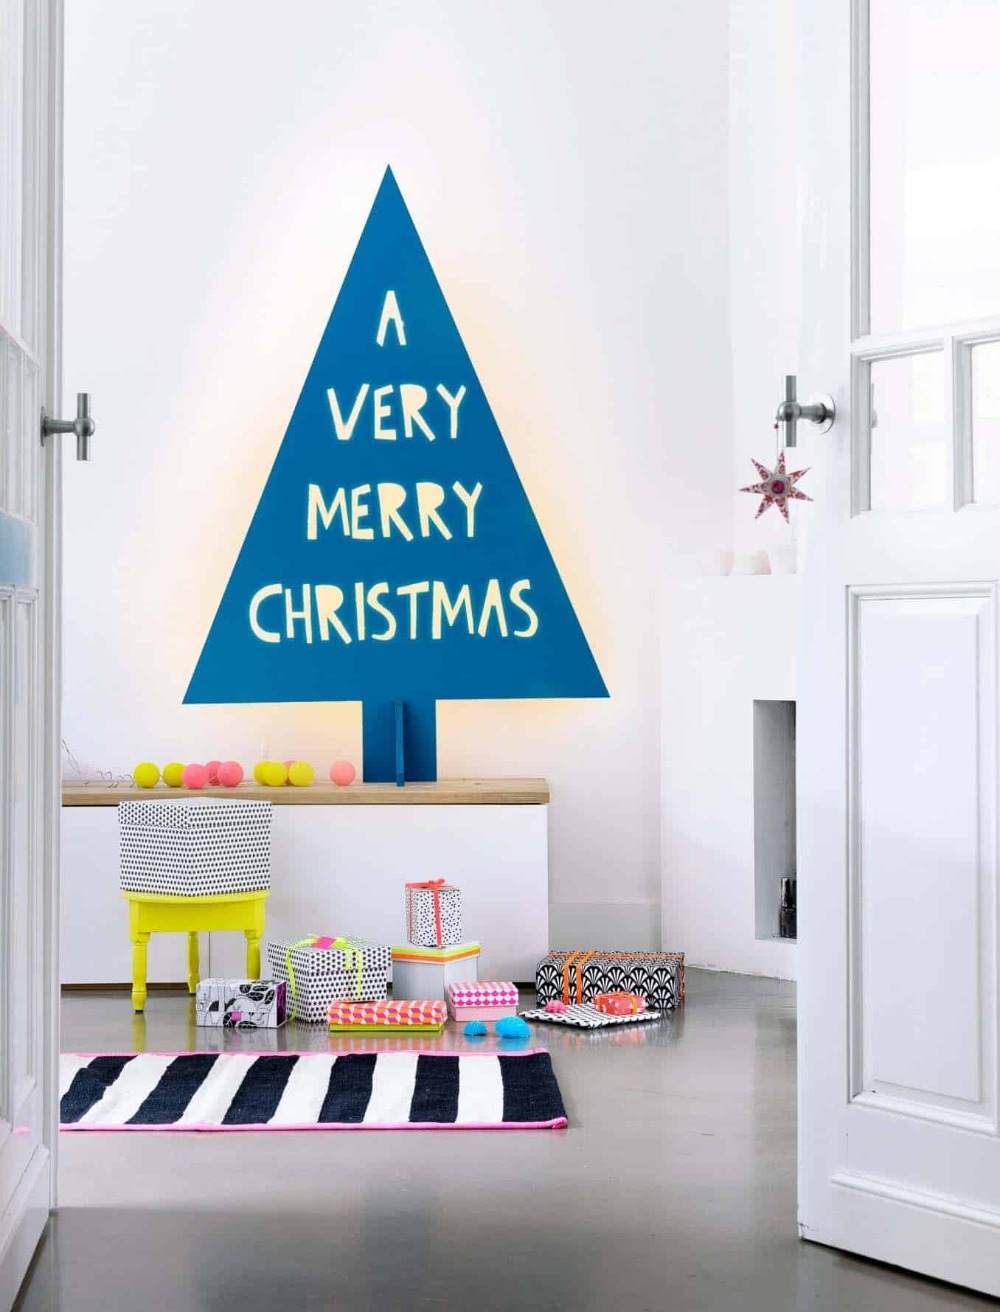 تعليمات العبث شجرة عيد الميلاد الخشبية الحديثة لون أزرق عصري مع رسالة